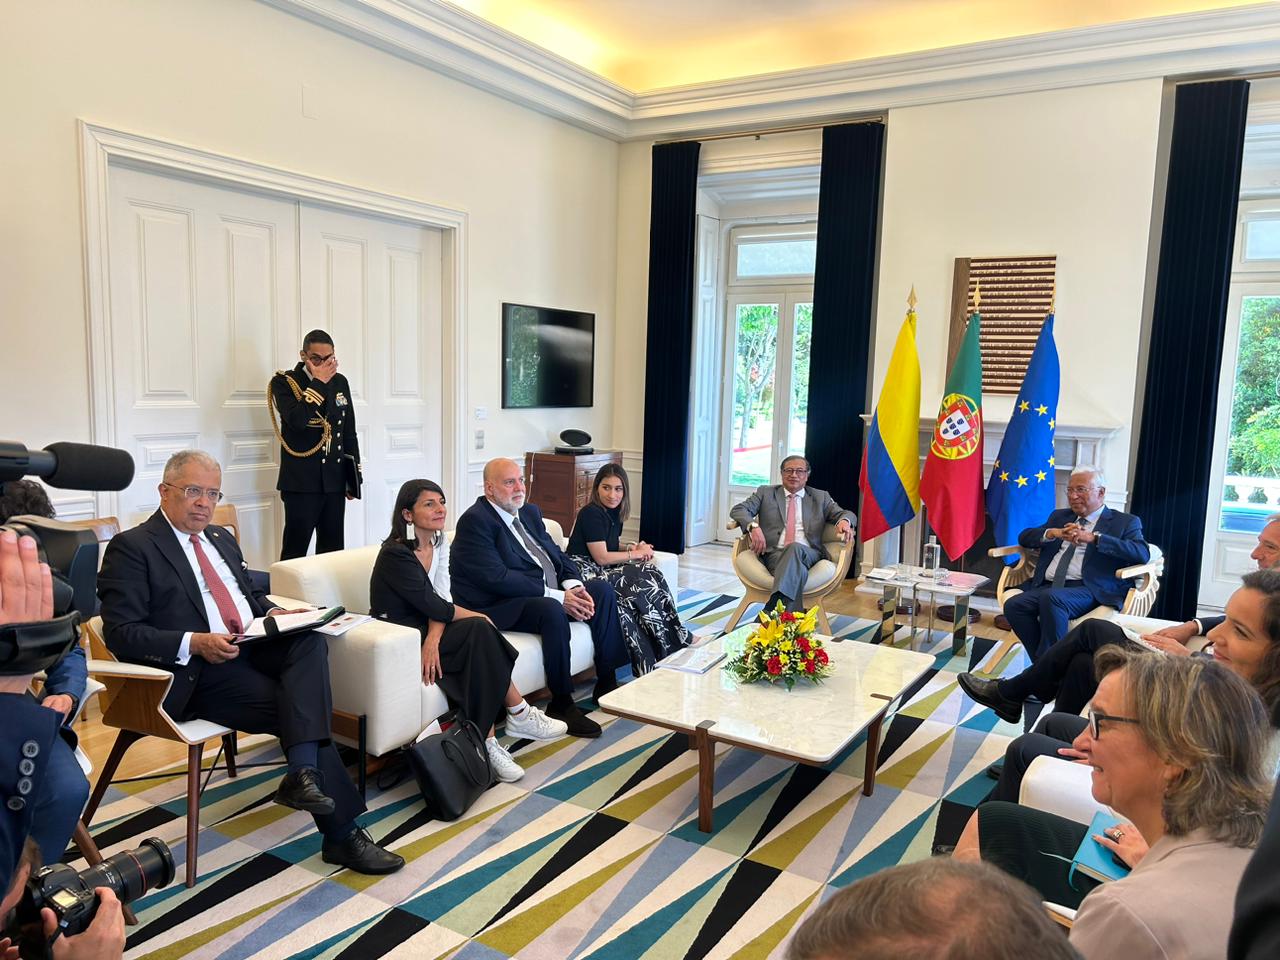 Paz total, política integral de drogas y energías limpias, temas que fortalecen la relación bilateral entre Colombia y Portugal